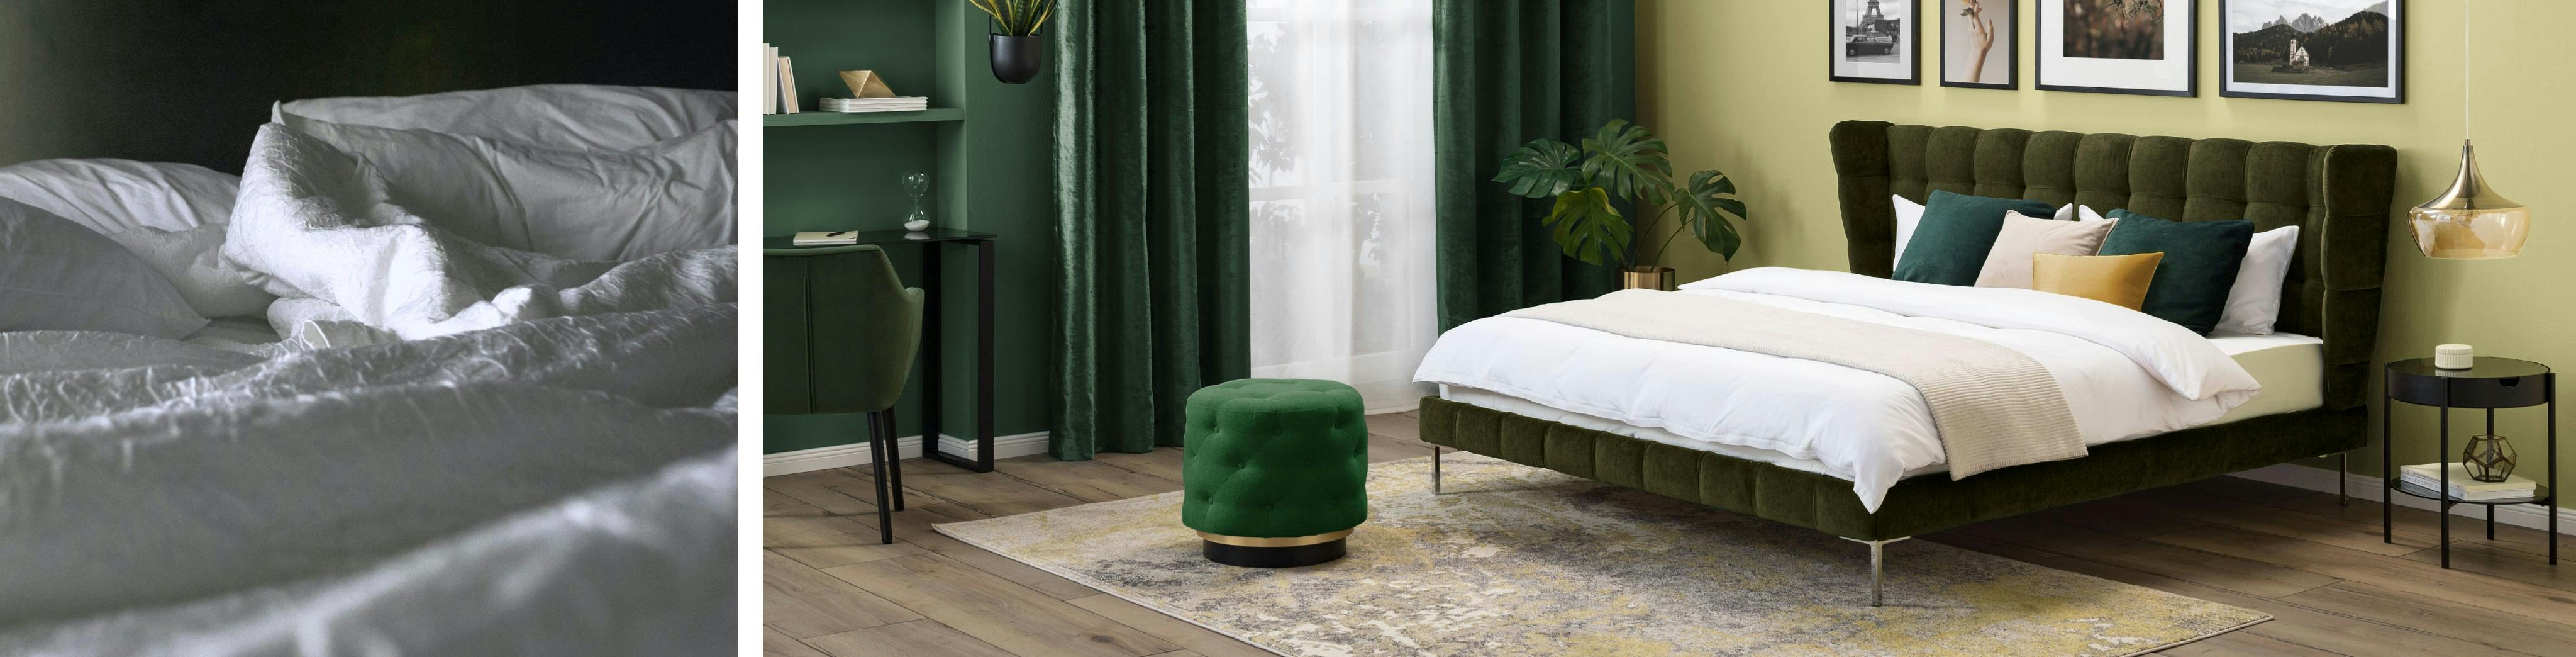 Combo de deux photos, l'une de linge de lit blanc froissé, l'autre d'une chambre aux tons verts, y compris les rideaux, les meubles et la déco, le lit, et dont löe linge est blanc